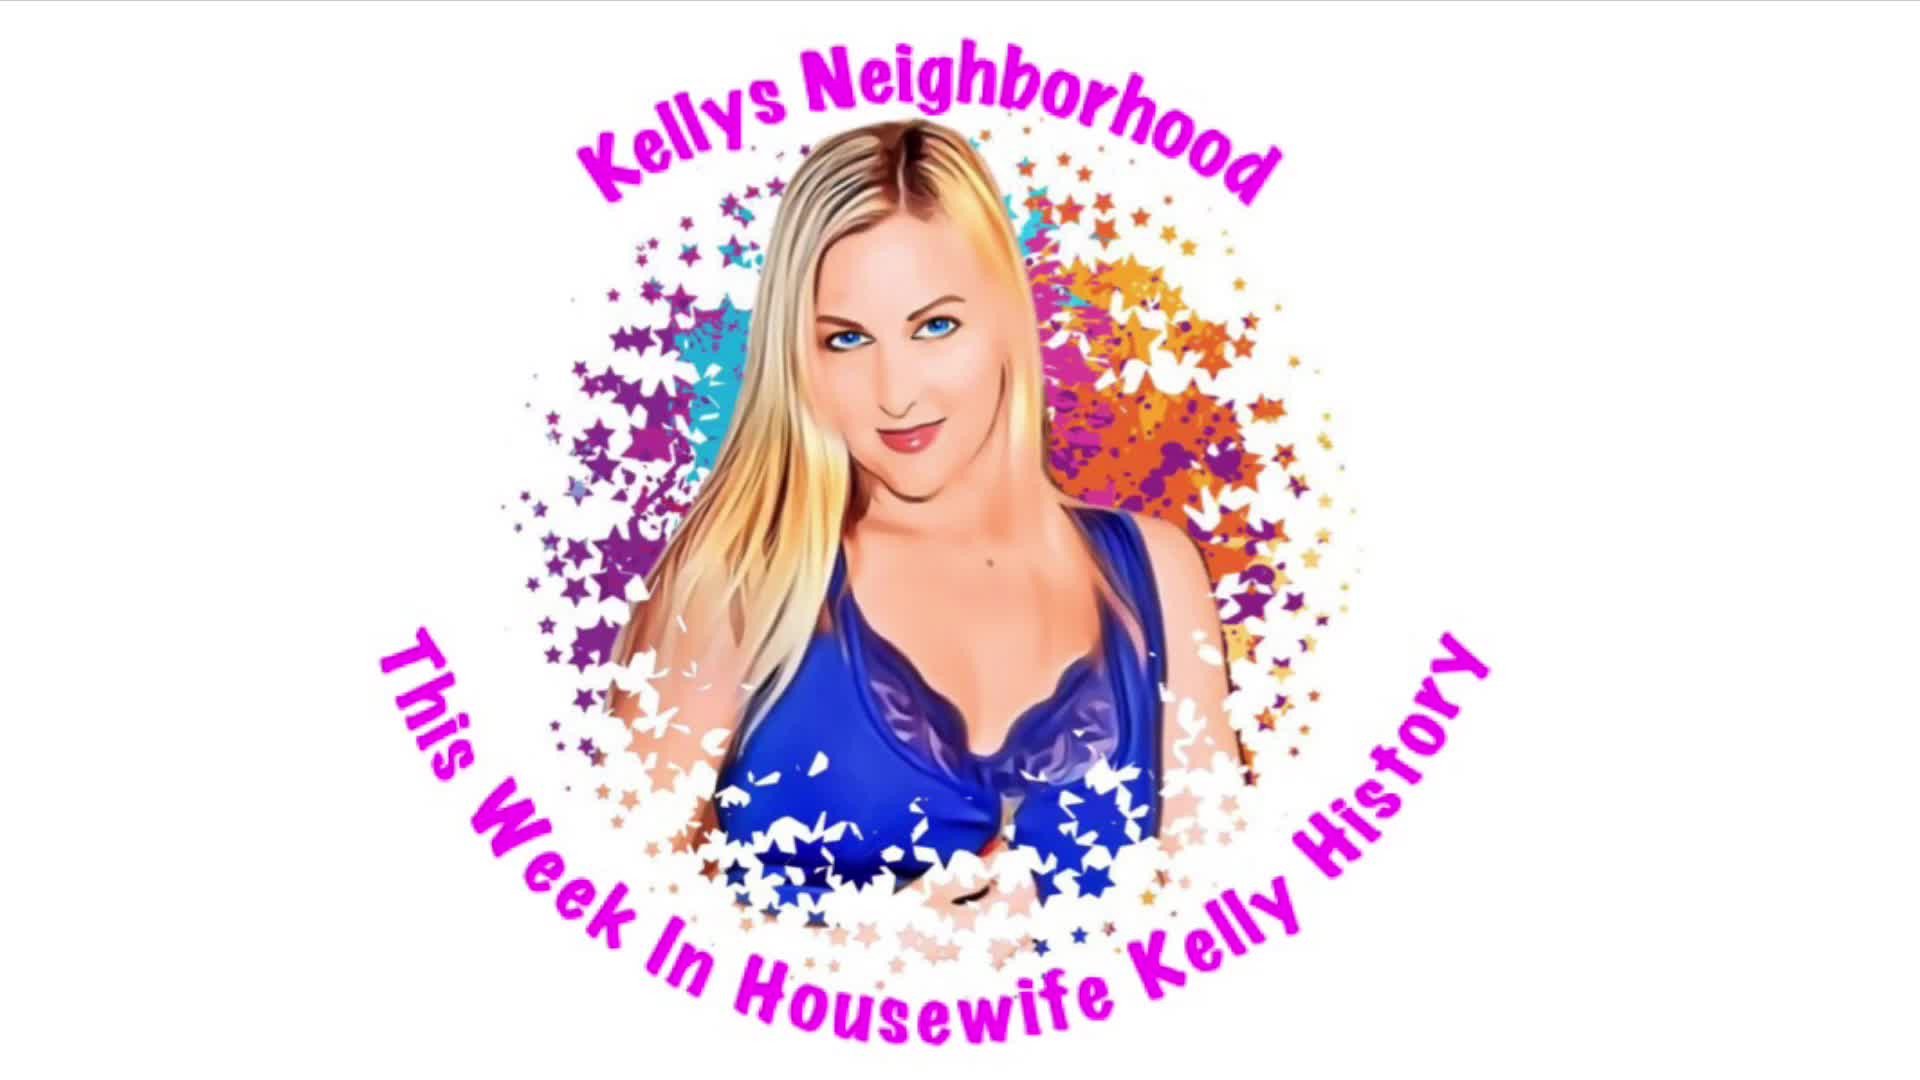 Video post by Kellys Neighborhood